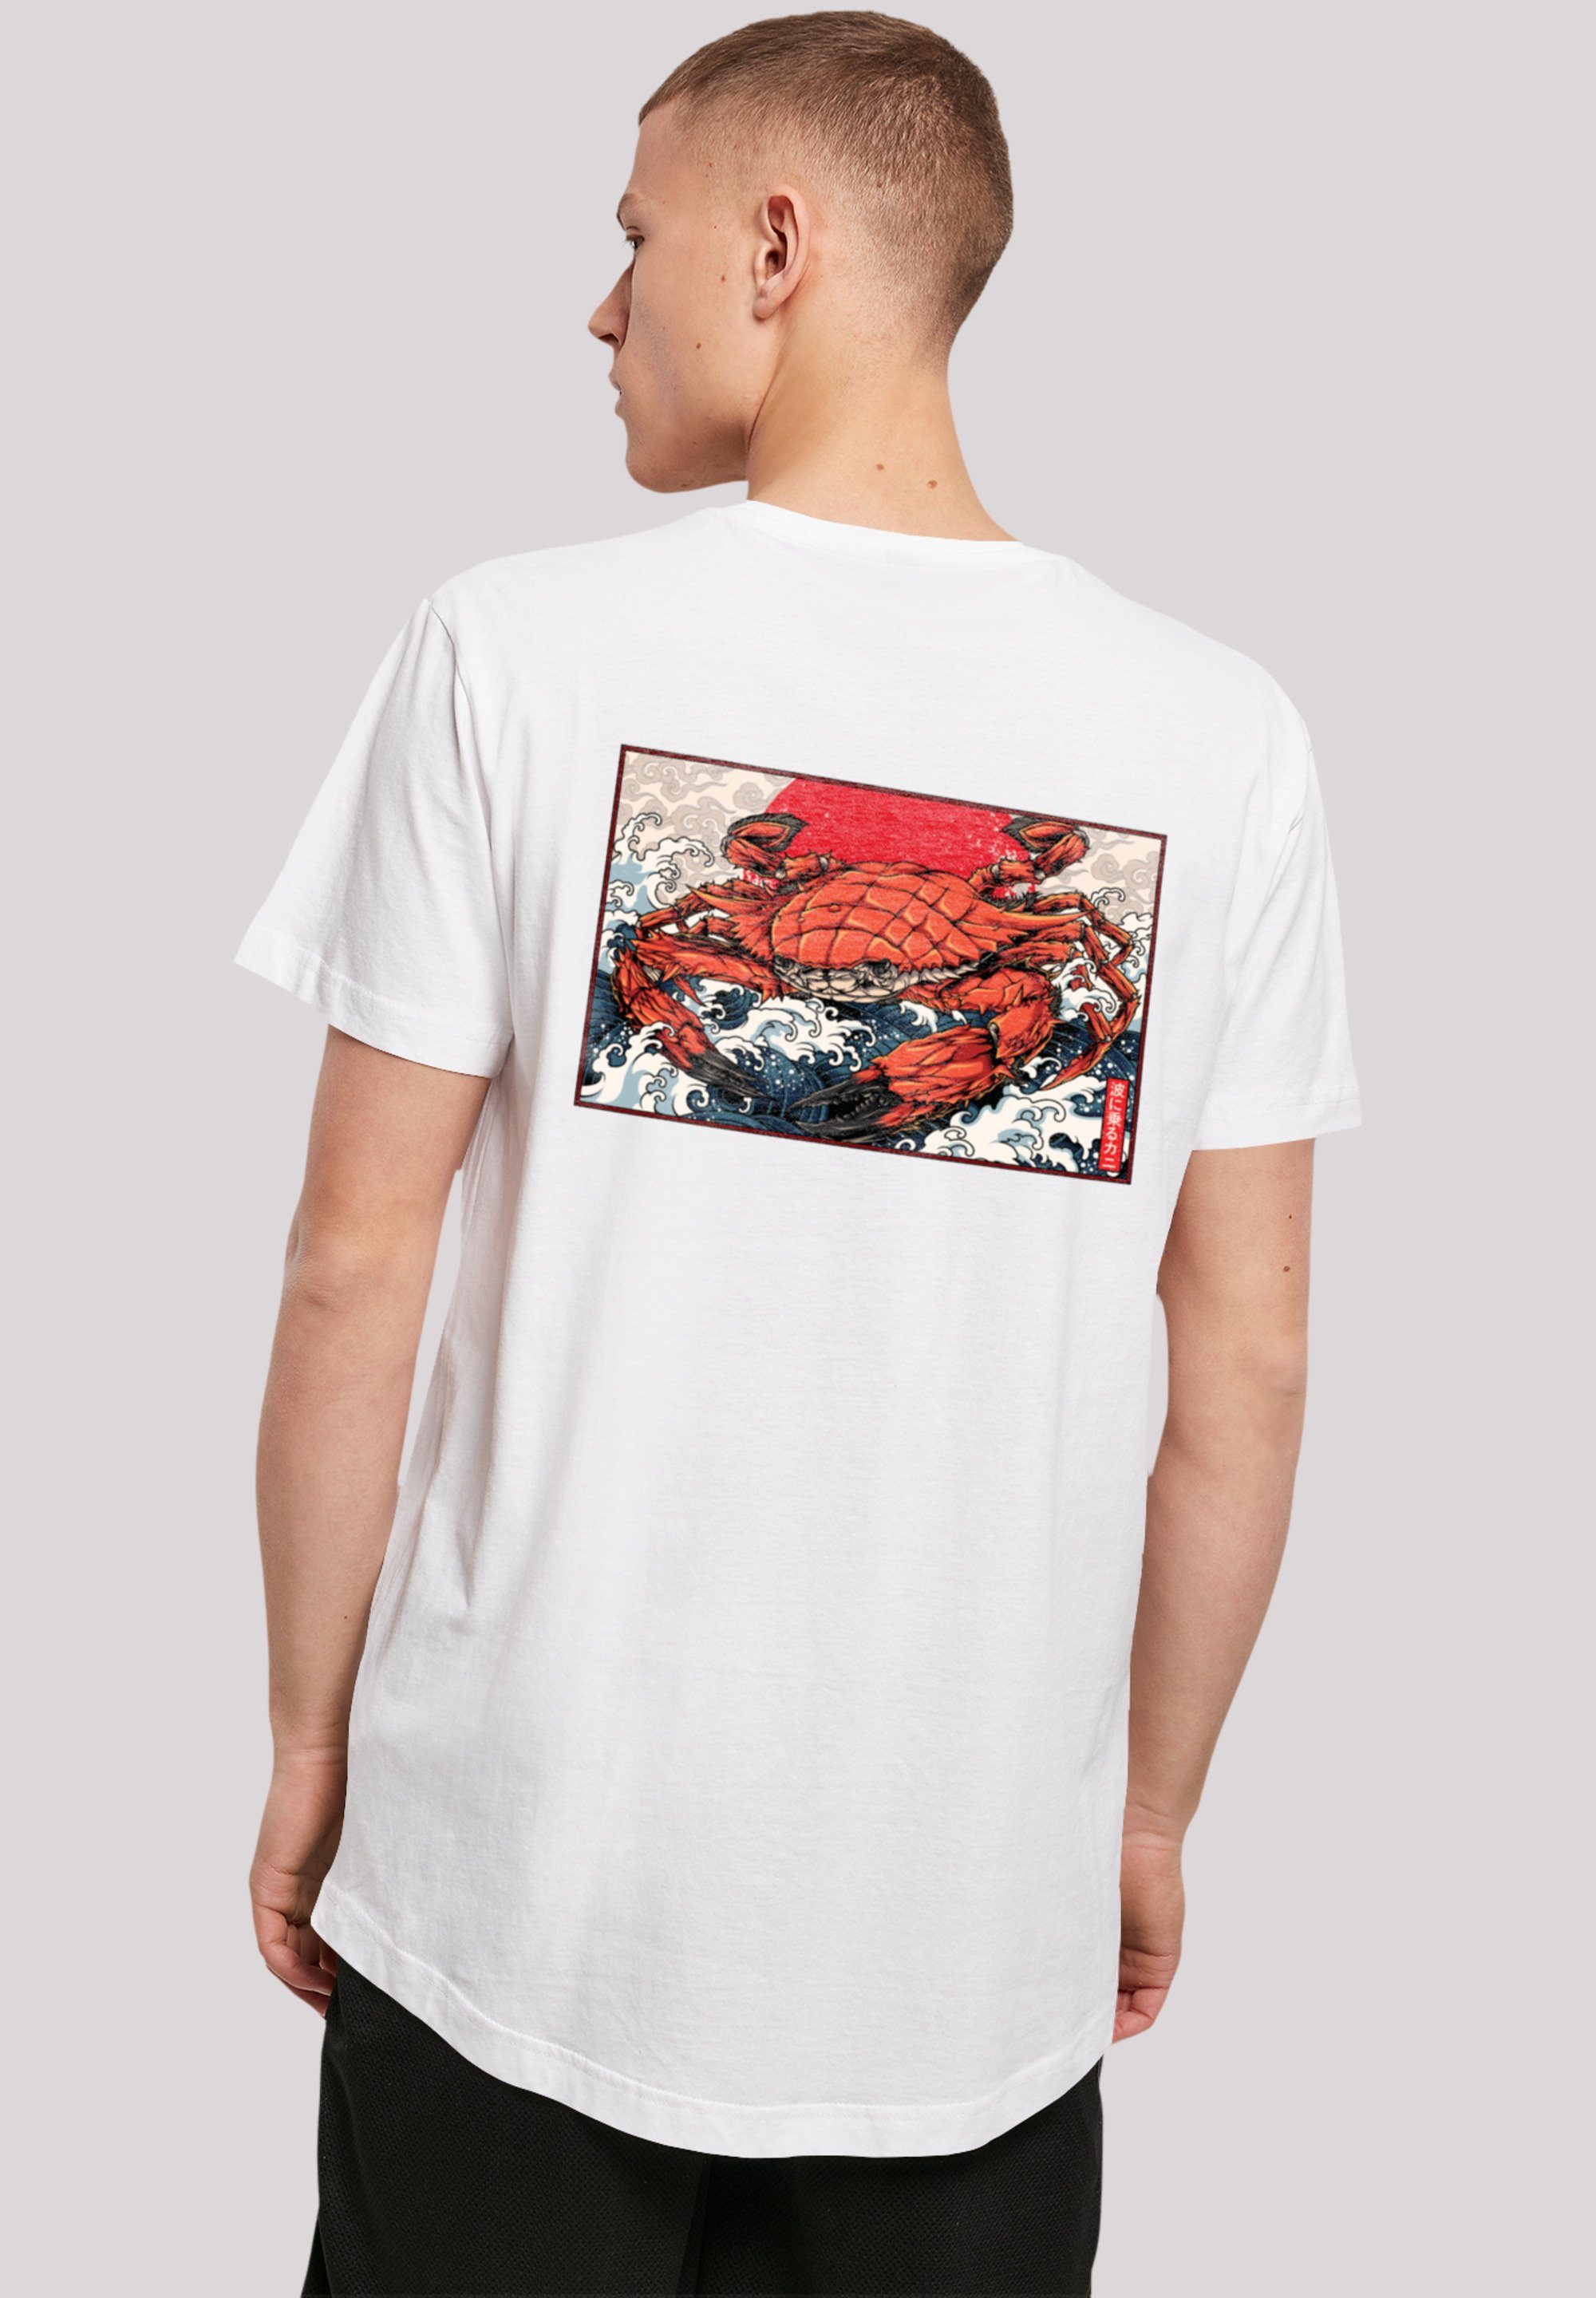 F4NT4STIC T-Shirt hohem weicher Welle Baumwollstoff Print, Tragekomfort mit Japan Crab Sehr